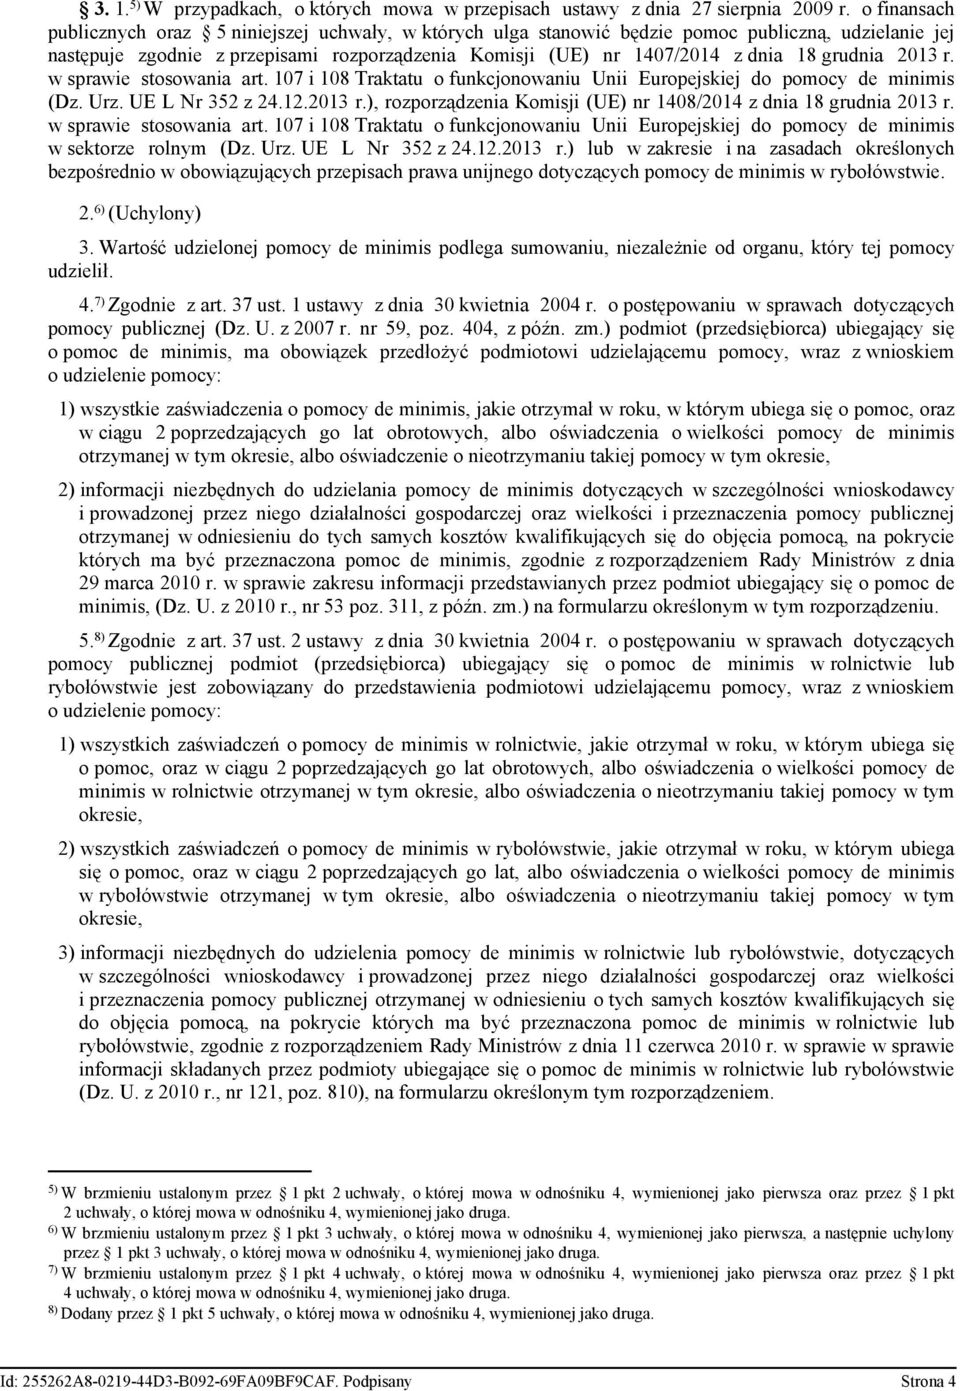 grudnia 2013 r. w sprawie stosowania art. 107 i 108 Traktatu o funkcjonowaniu Unii Europejskiej do pomocy de minimis (Dz. Urz. UE L Nr 352 z 24.12.2013 r.), rozporządzenia Komisji (UE) nr 1408/2014 z dnia 18 grudnia 2013 r.